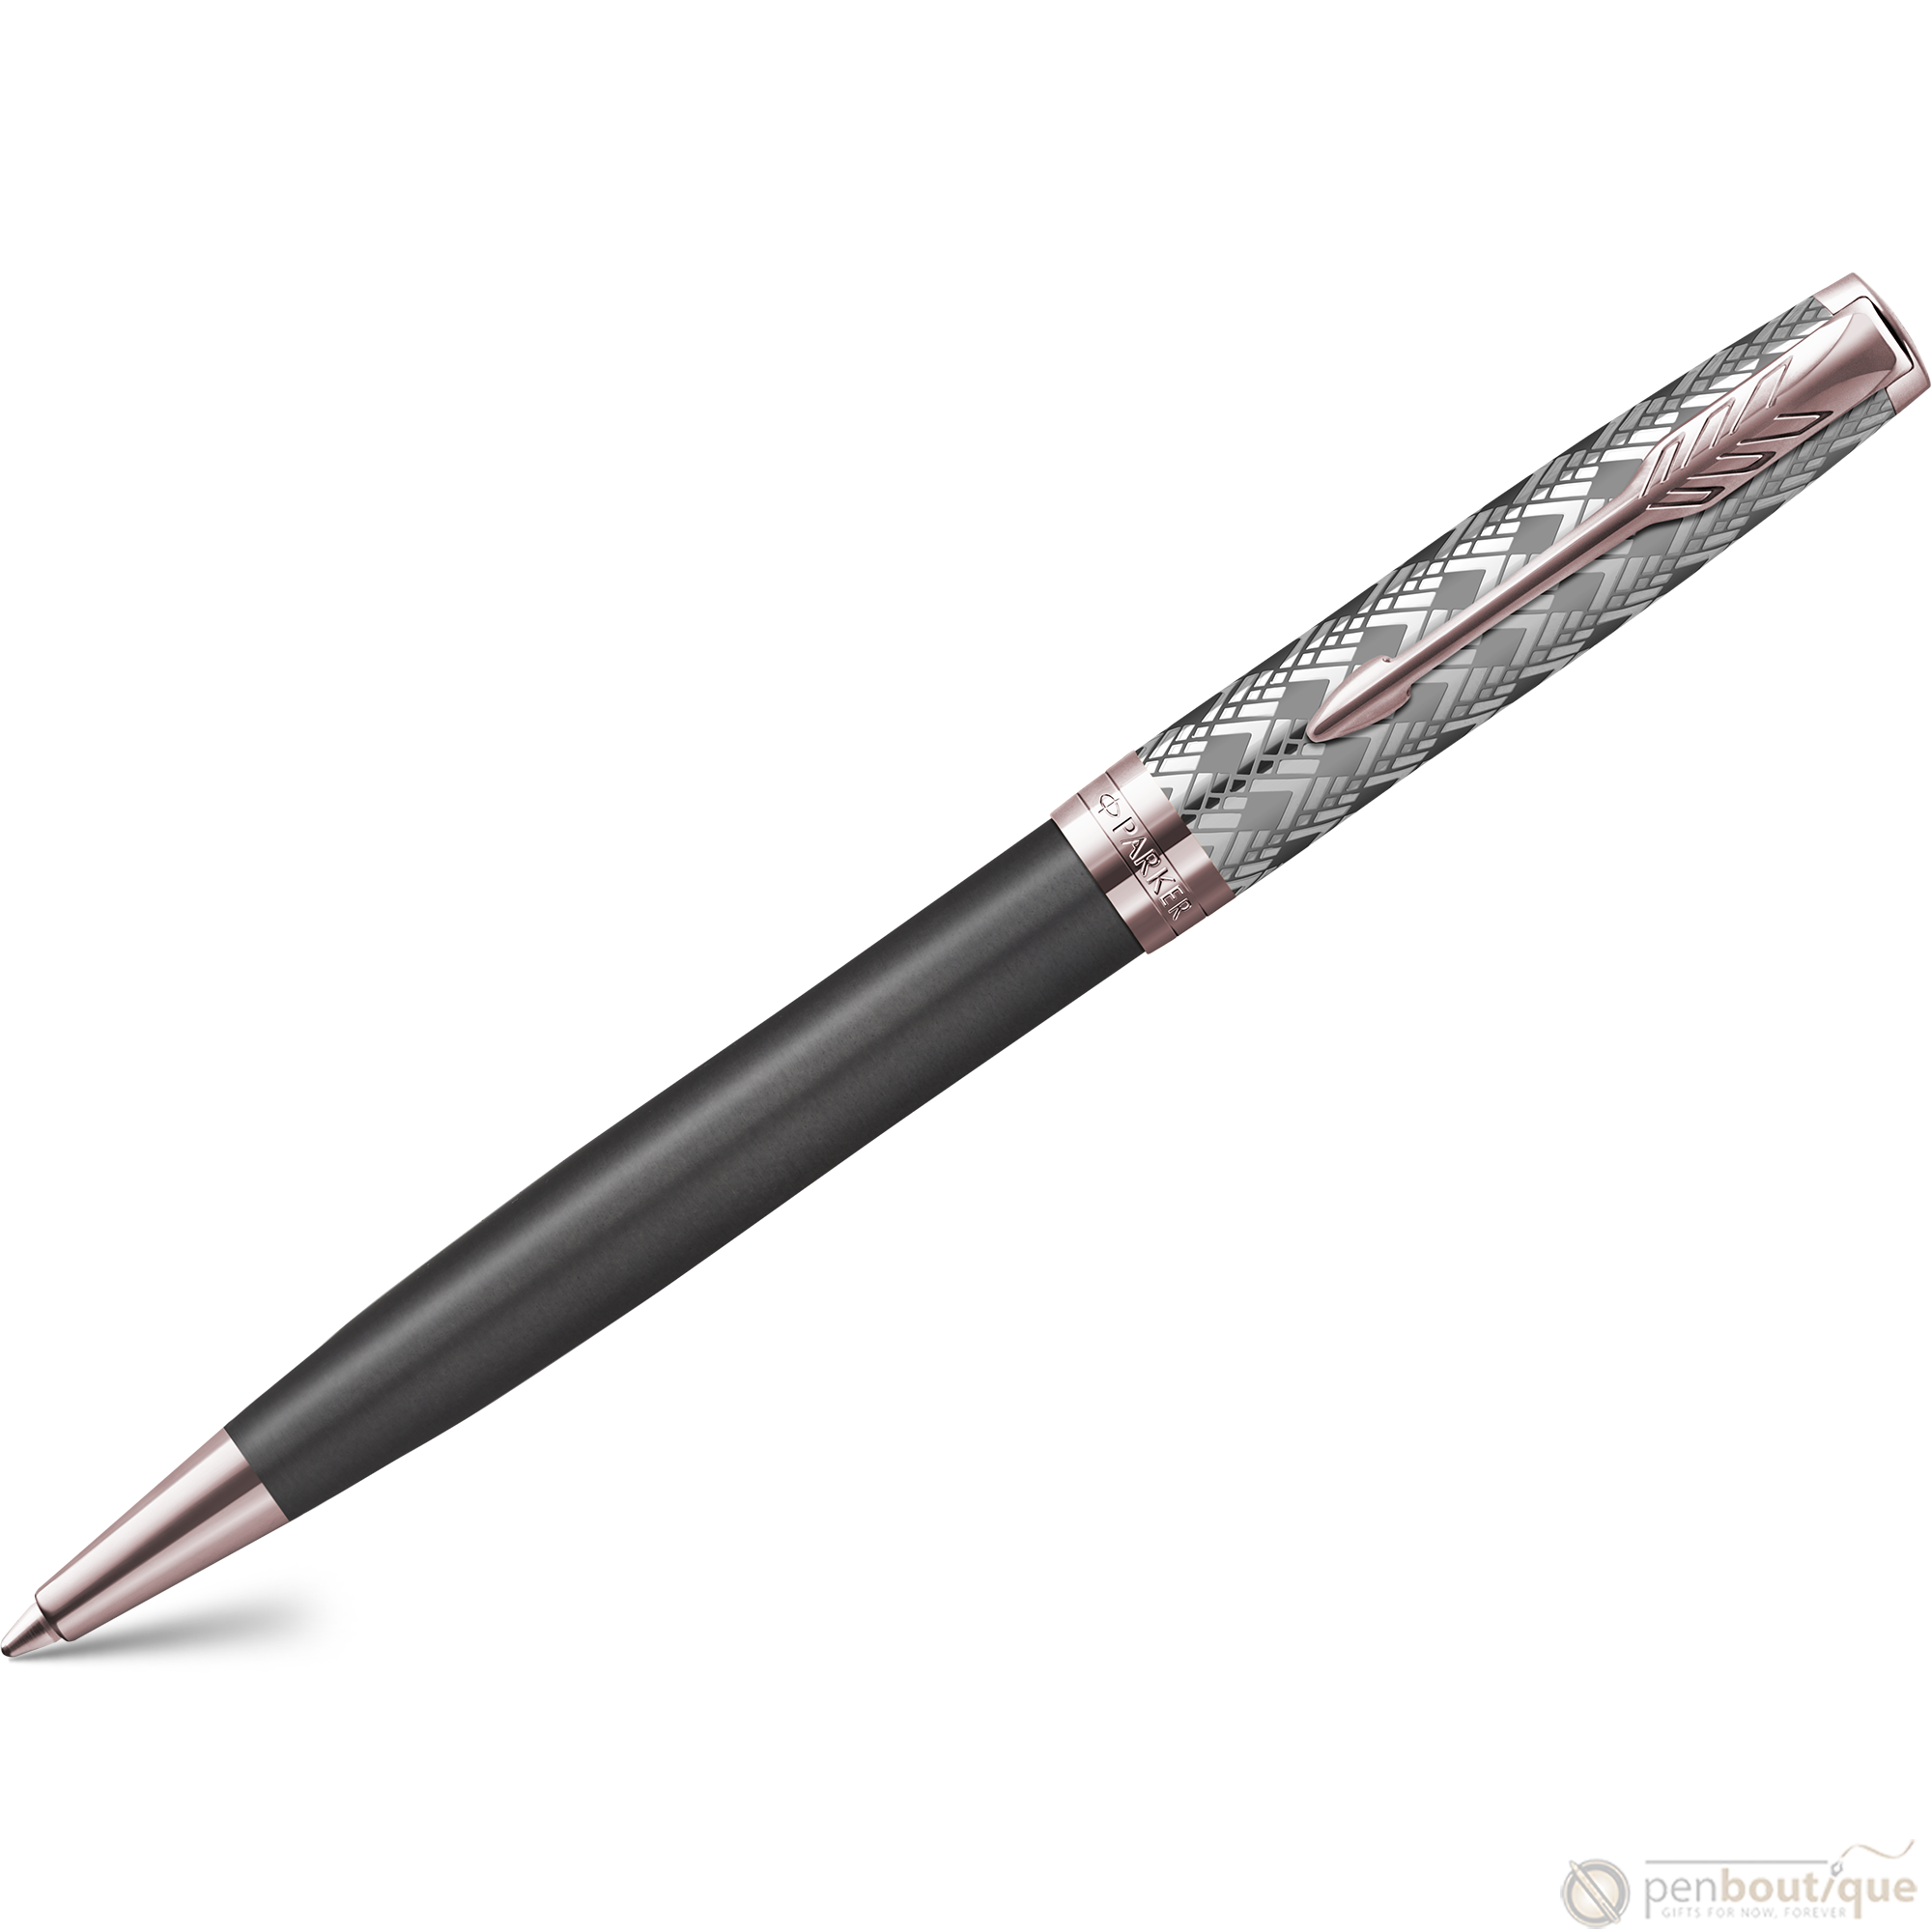 Parker Sonnet Premium Refresh Ballpoint Pen - Metal & Grey - Pink Gold Trim-Pen Boutique Ltd